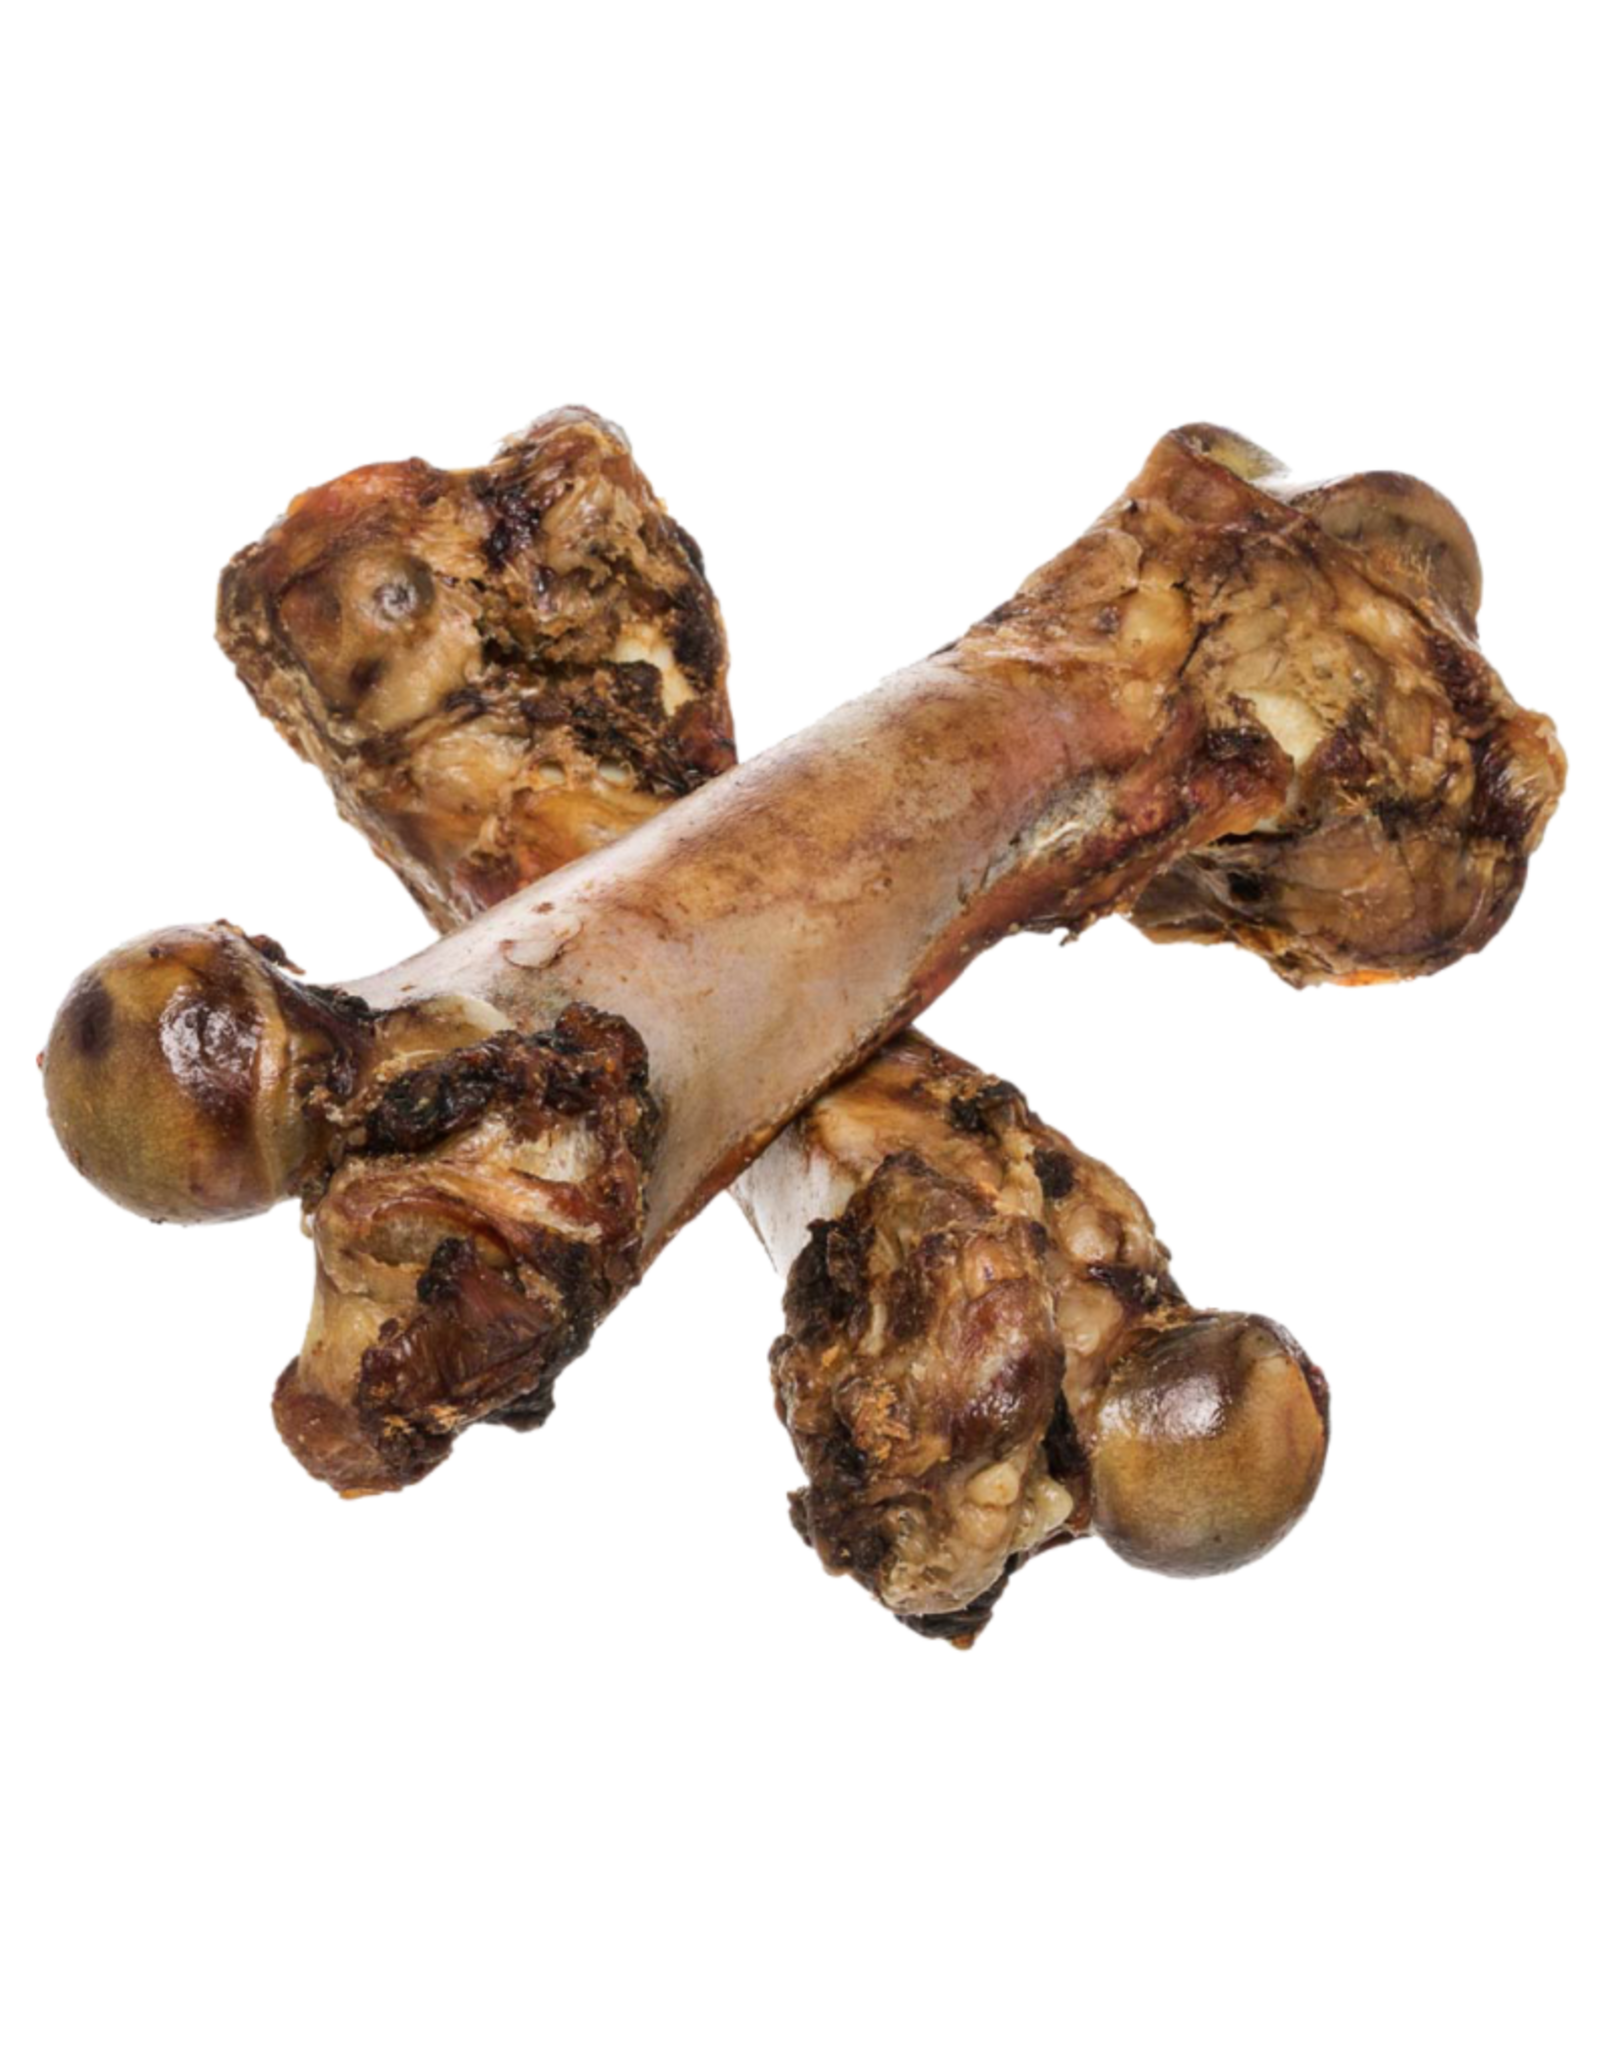 Redbarn Redbarn X-Large Ham Bone